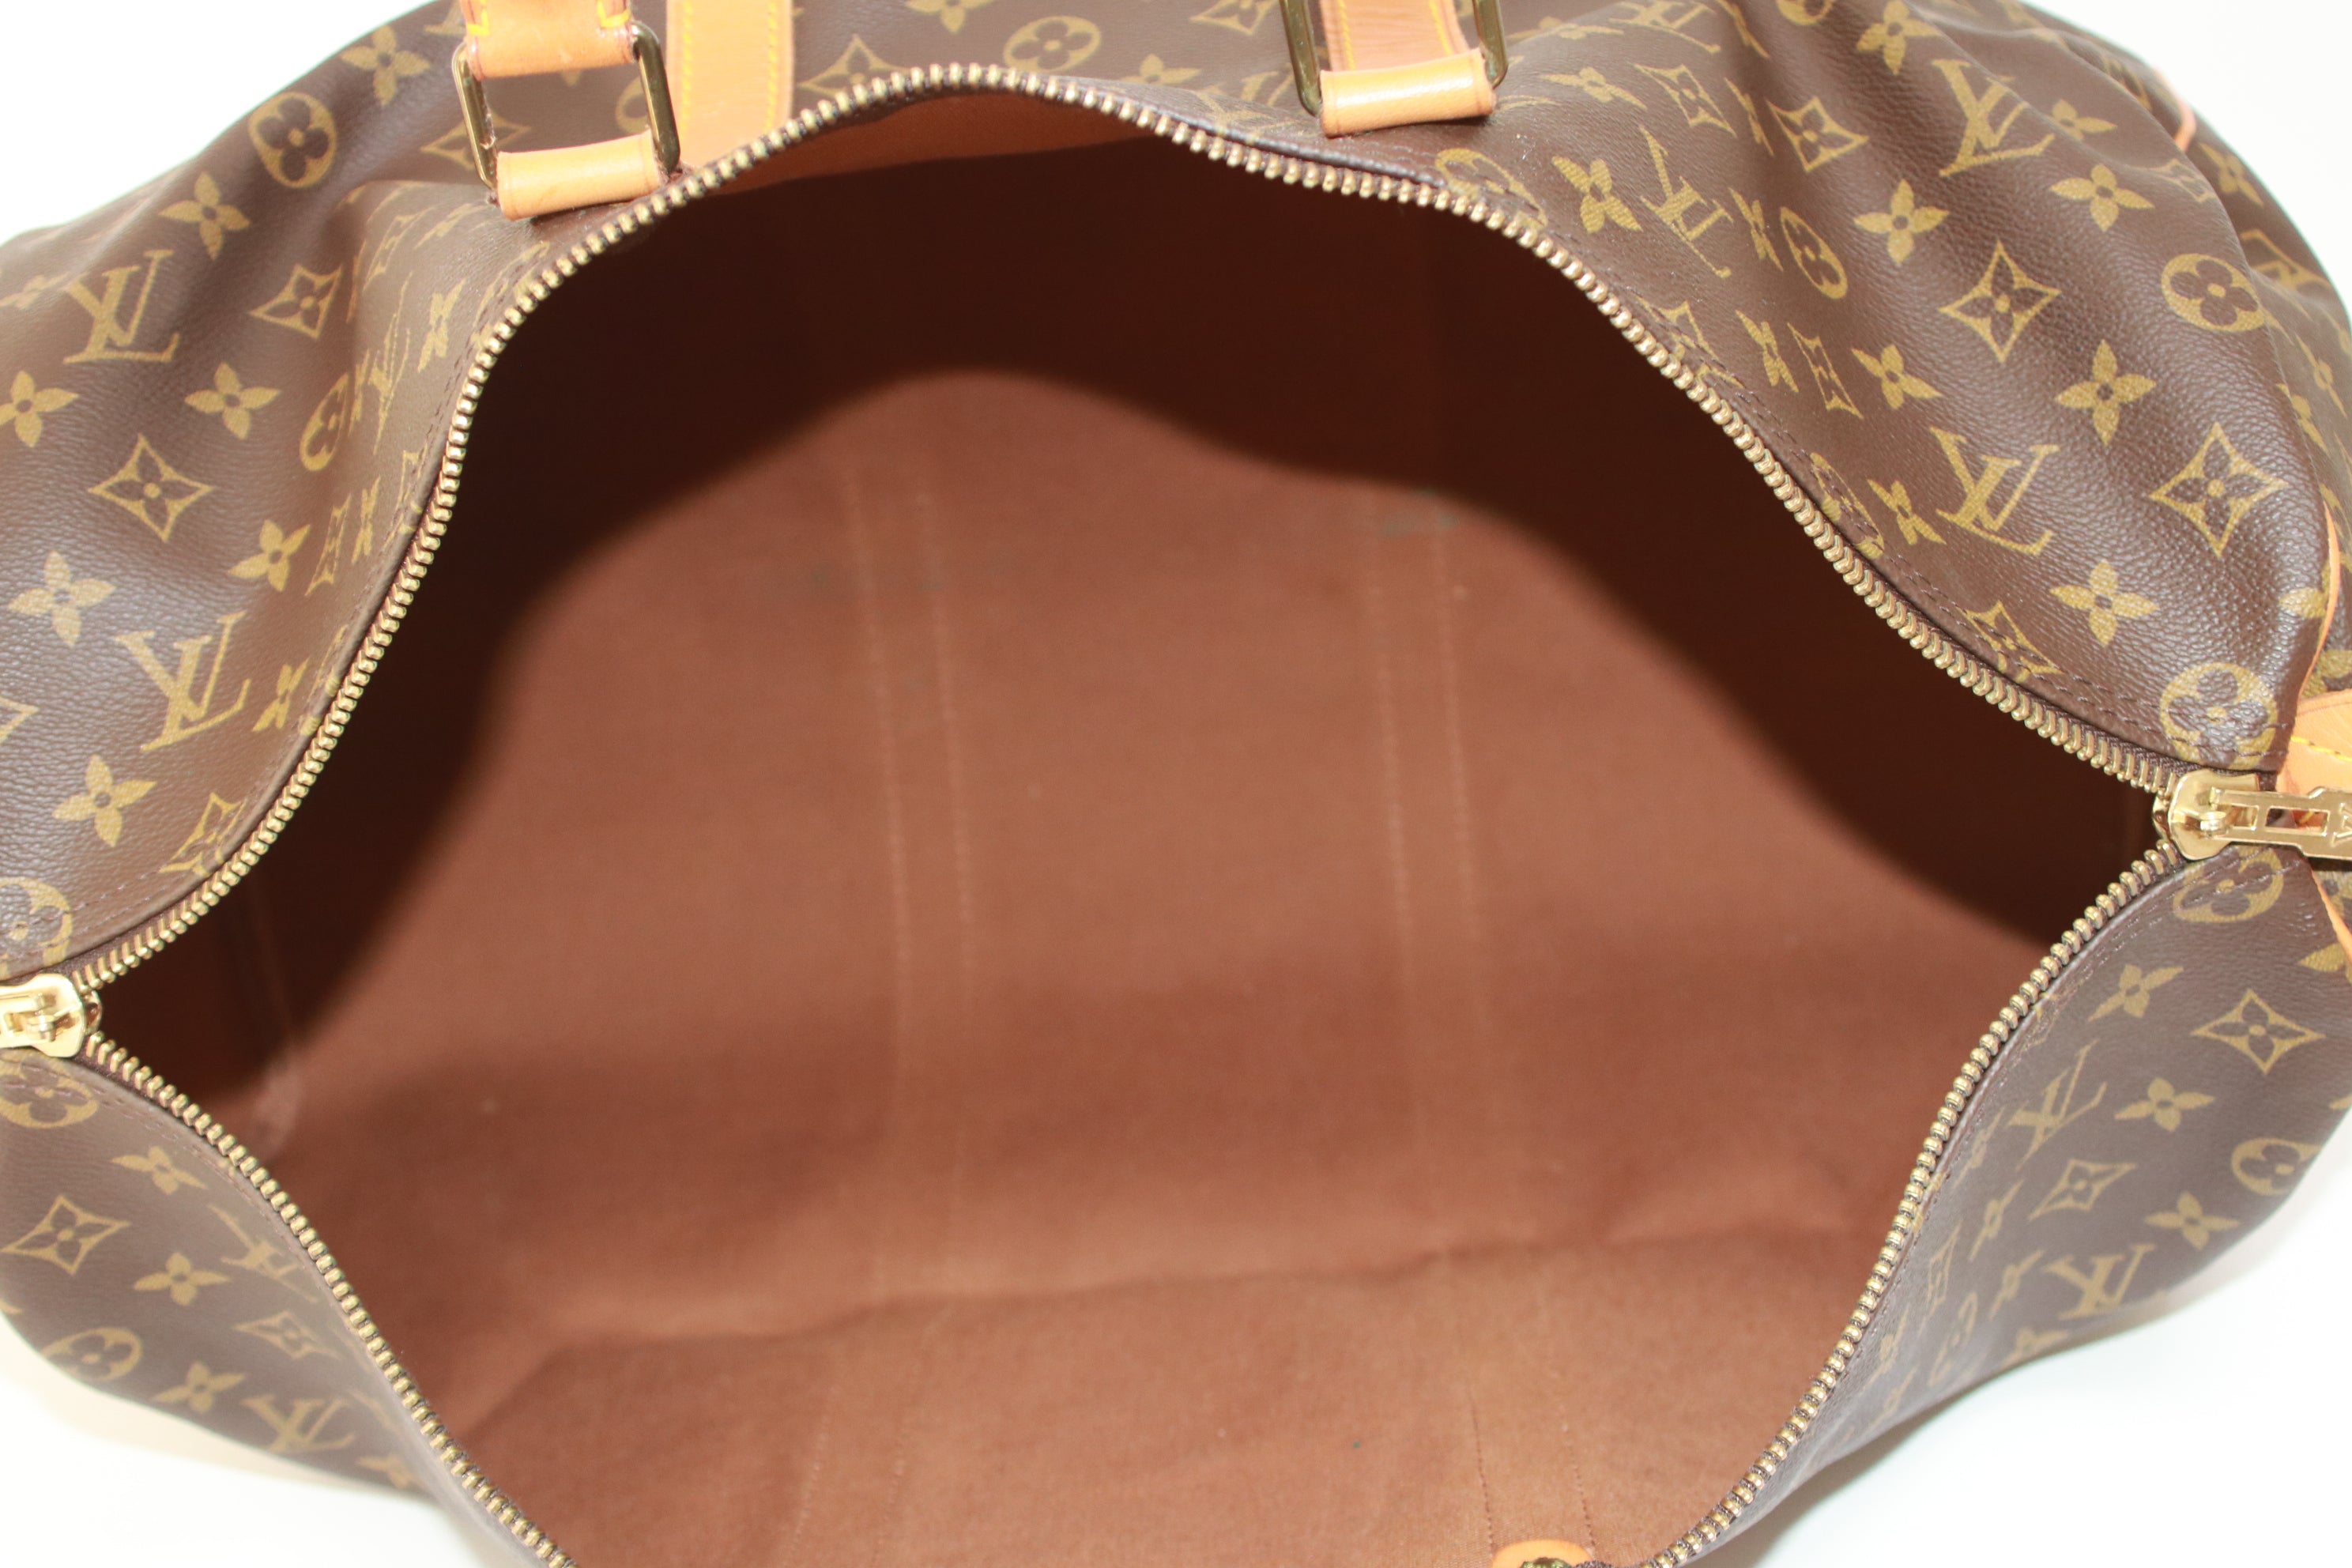 Louis Vuitton Women's Duffle Bags